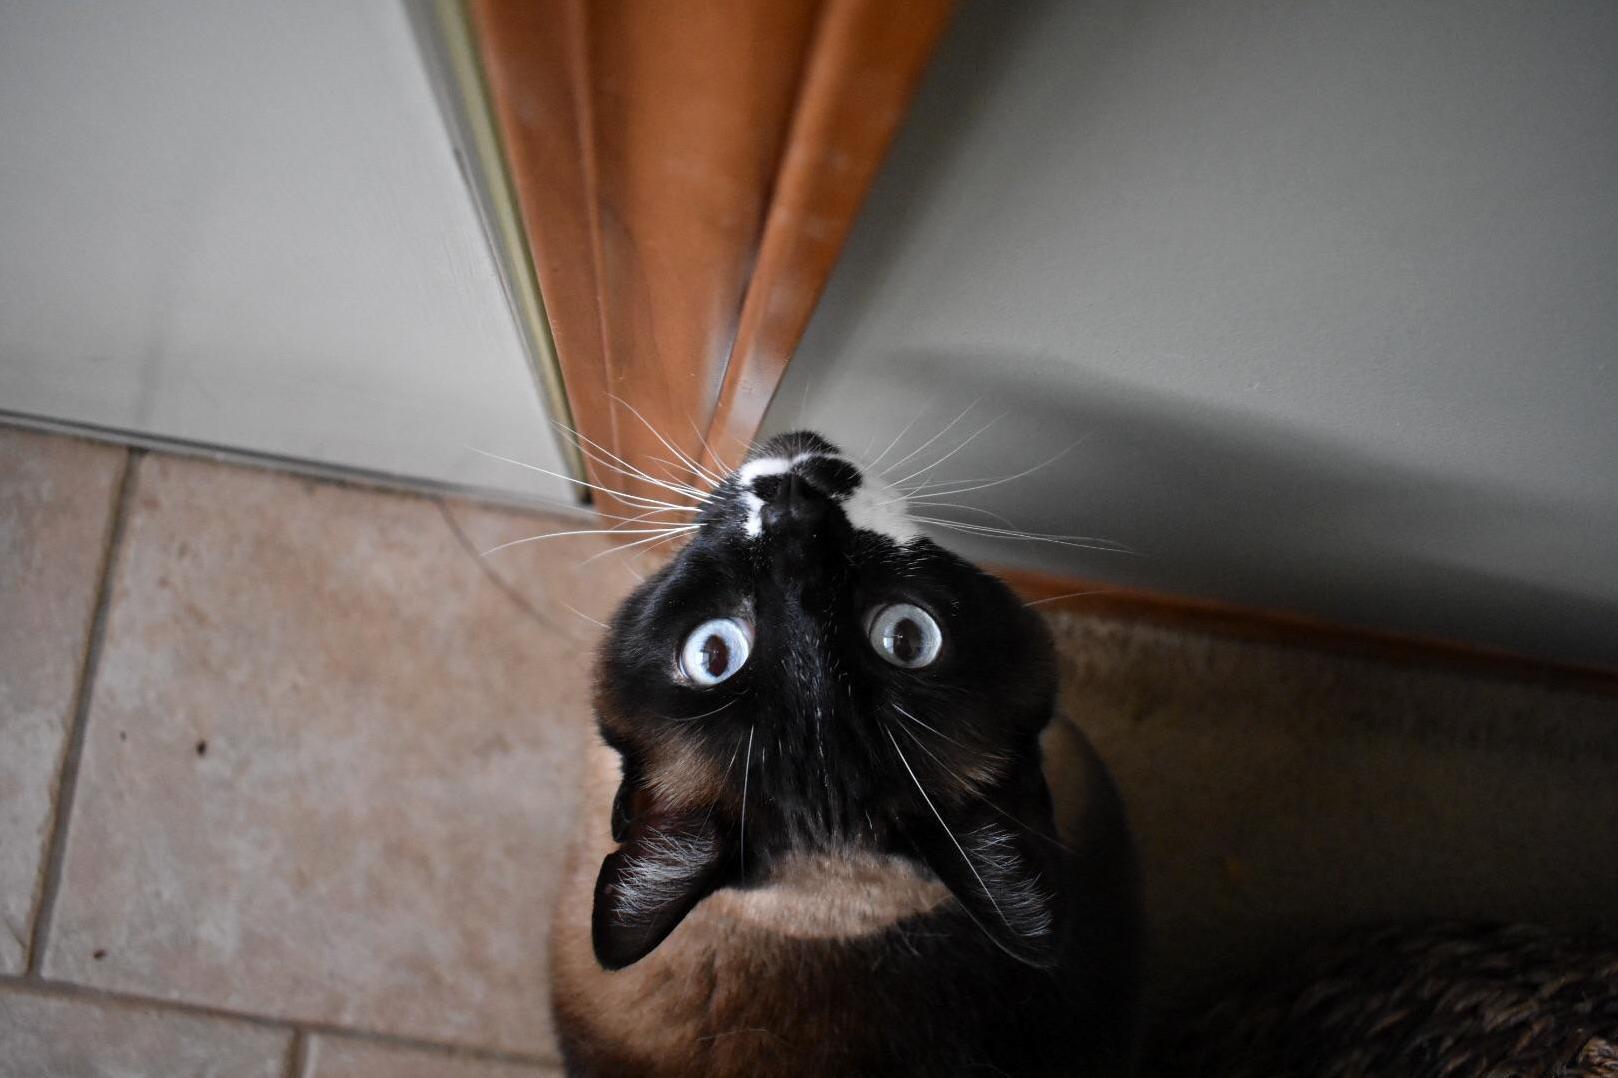 Open the door please